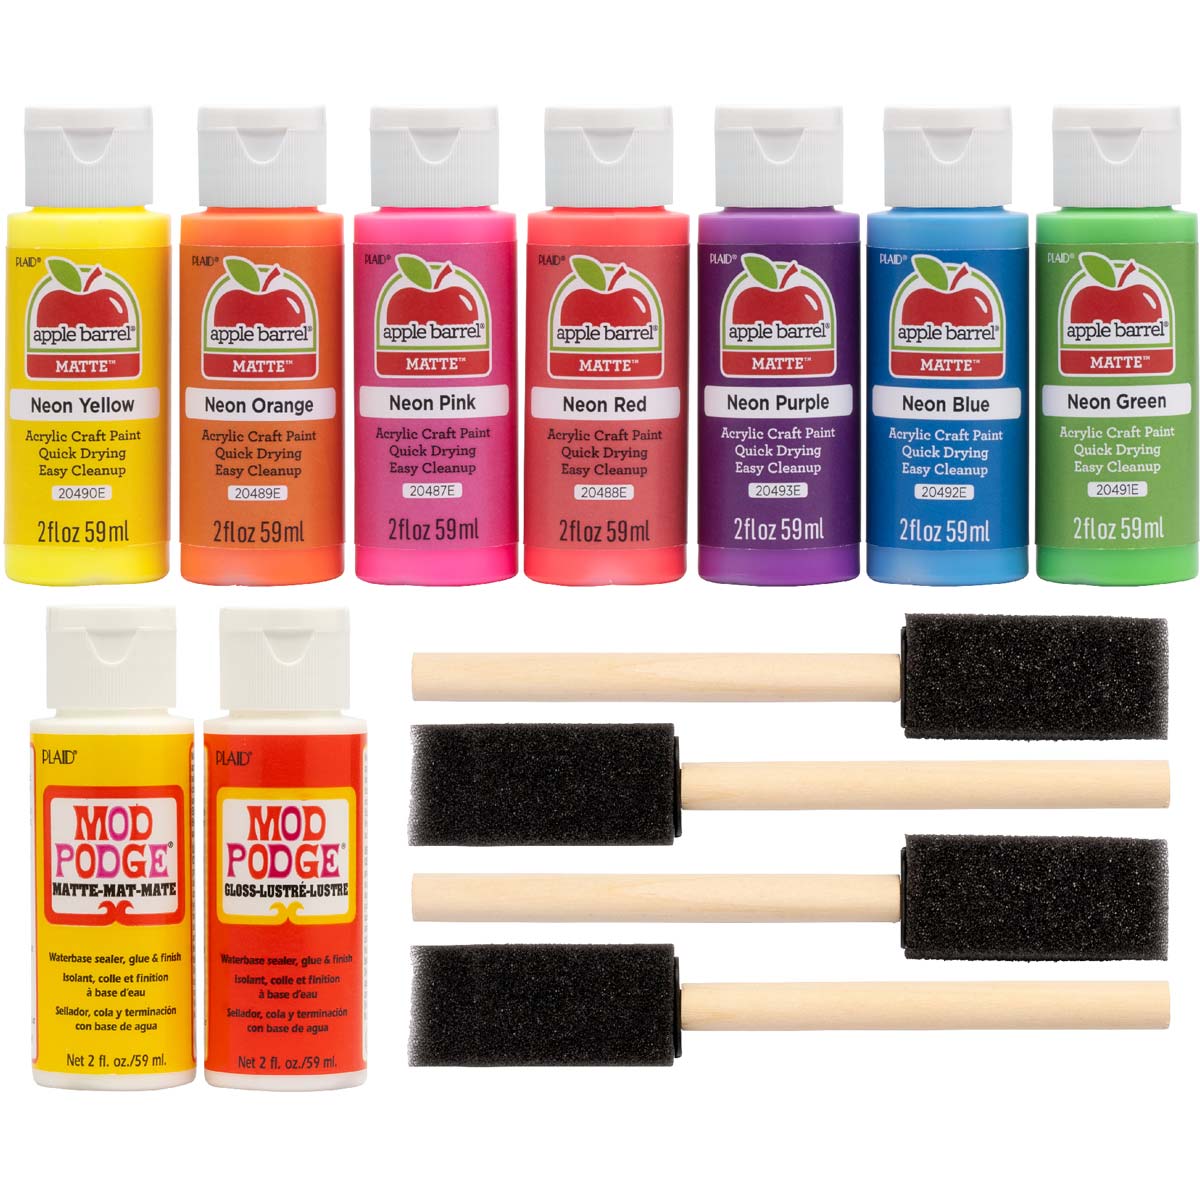 Shop Plaid Apple Barrel ® Paint Set - Neon paints and Mod Podge, 13 pc. -  PROMOABN22 - PROMOABN22